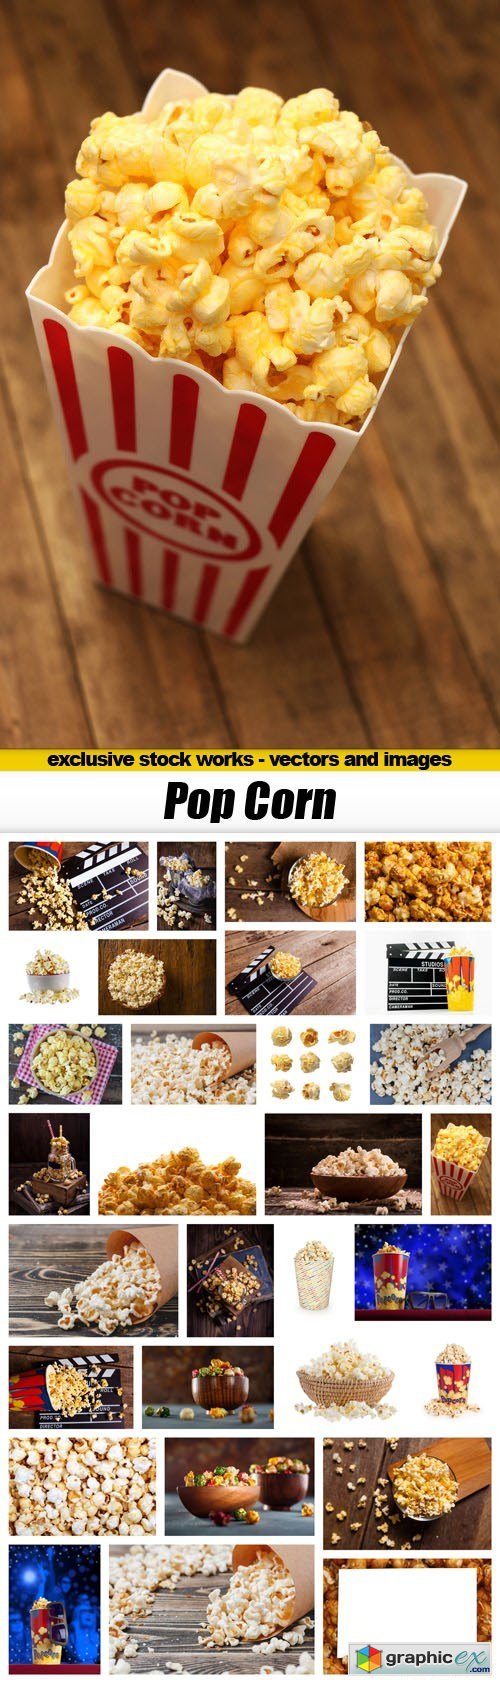 Pop Corn - 30xUHQ JPEG